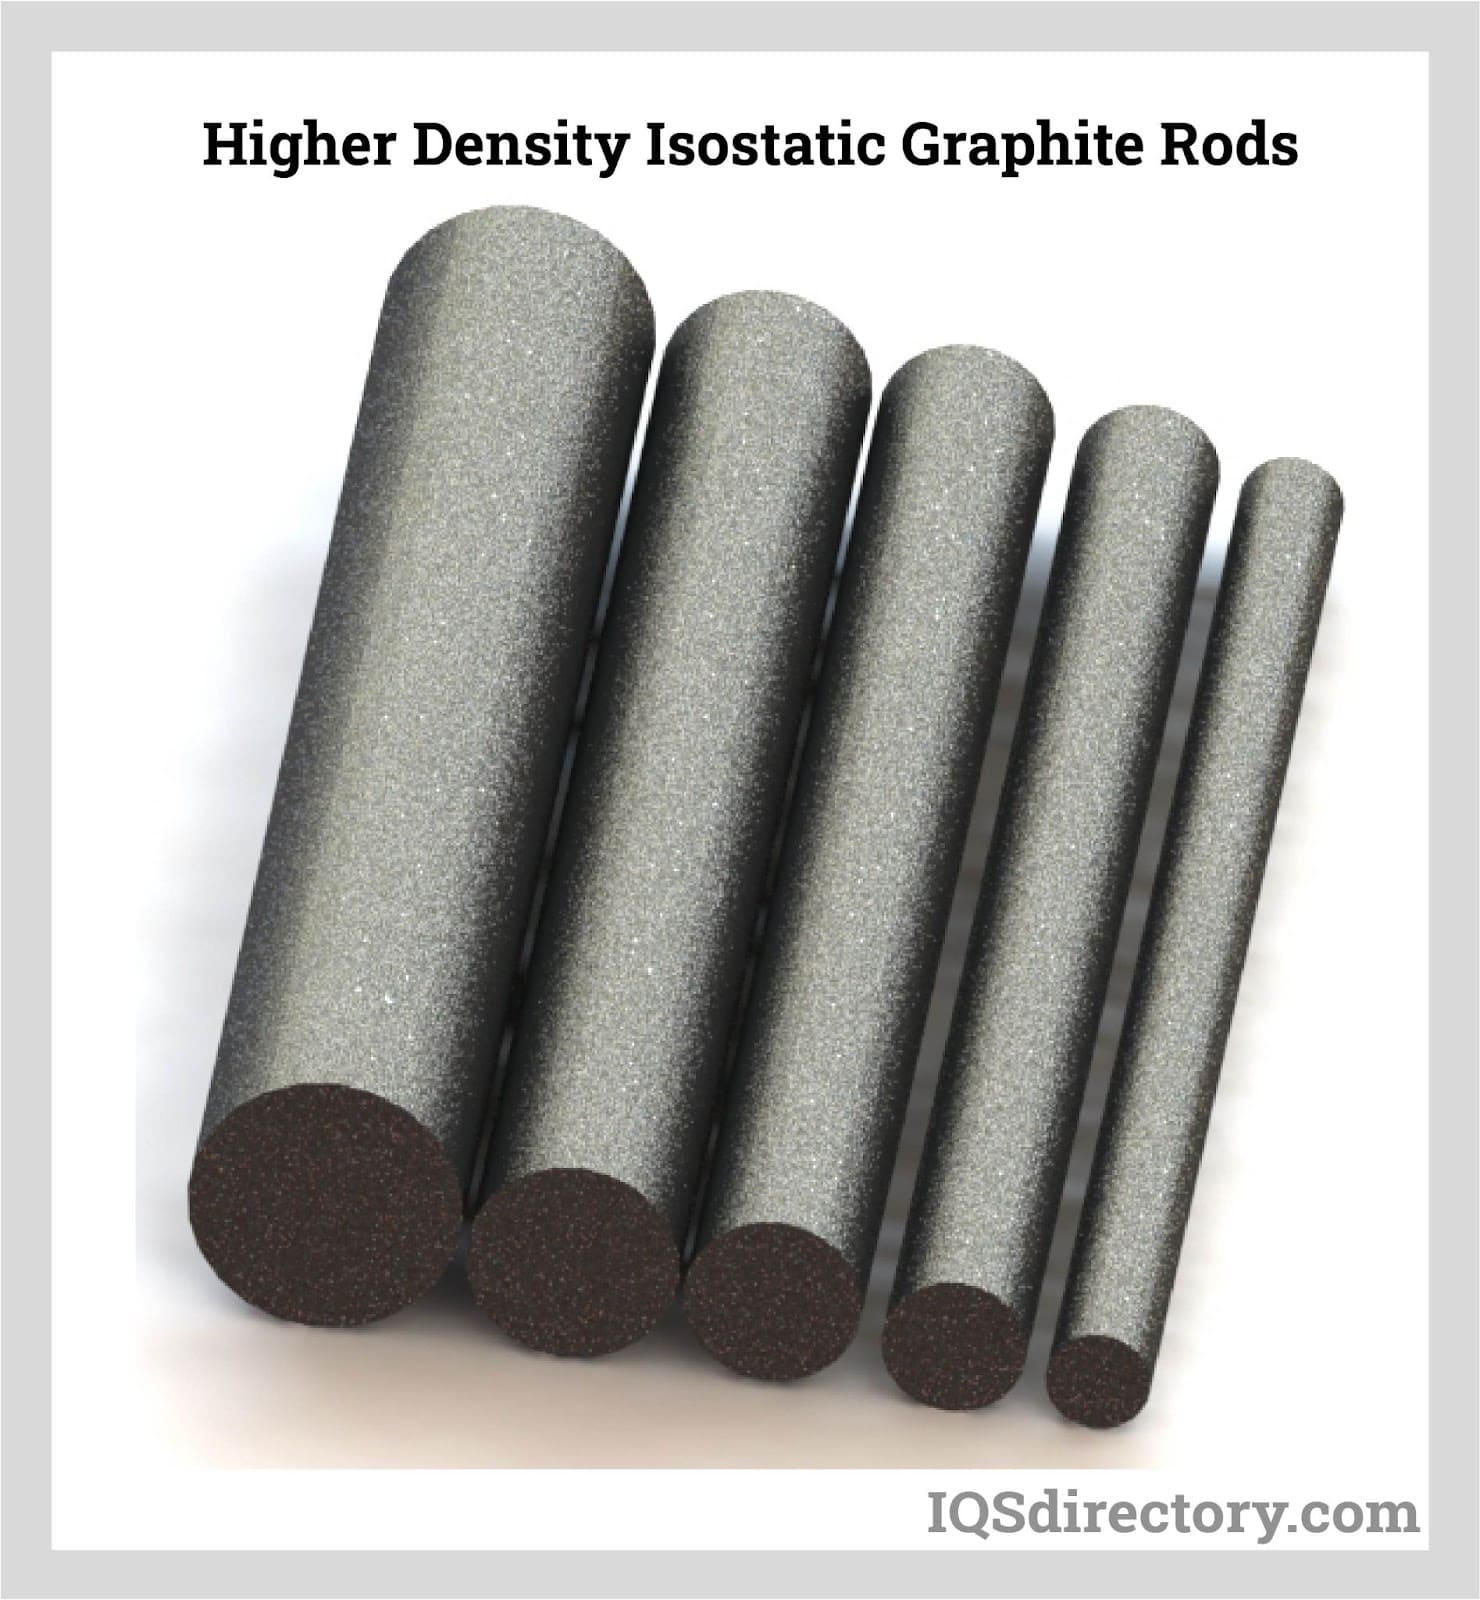 Higher Density Isostatic Graphite Rods